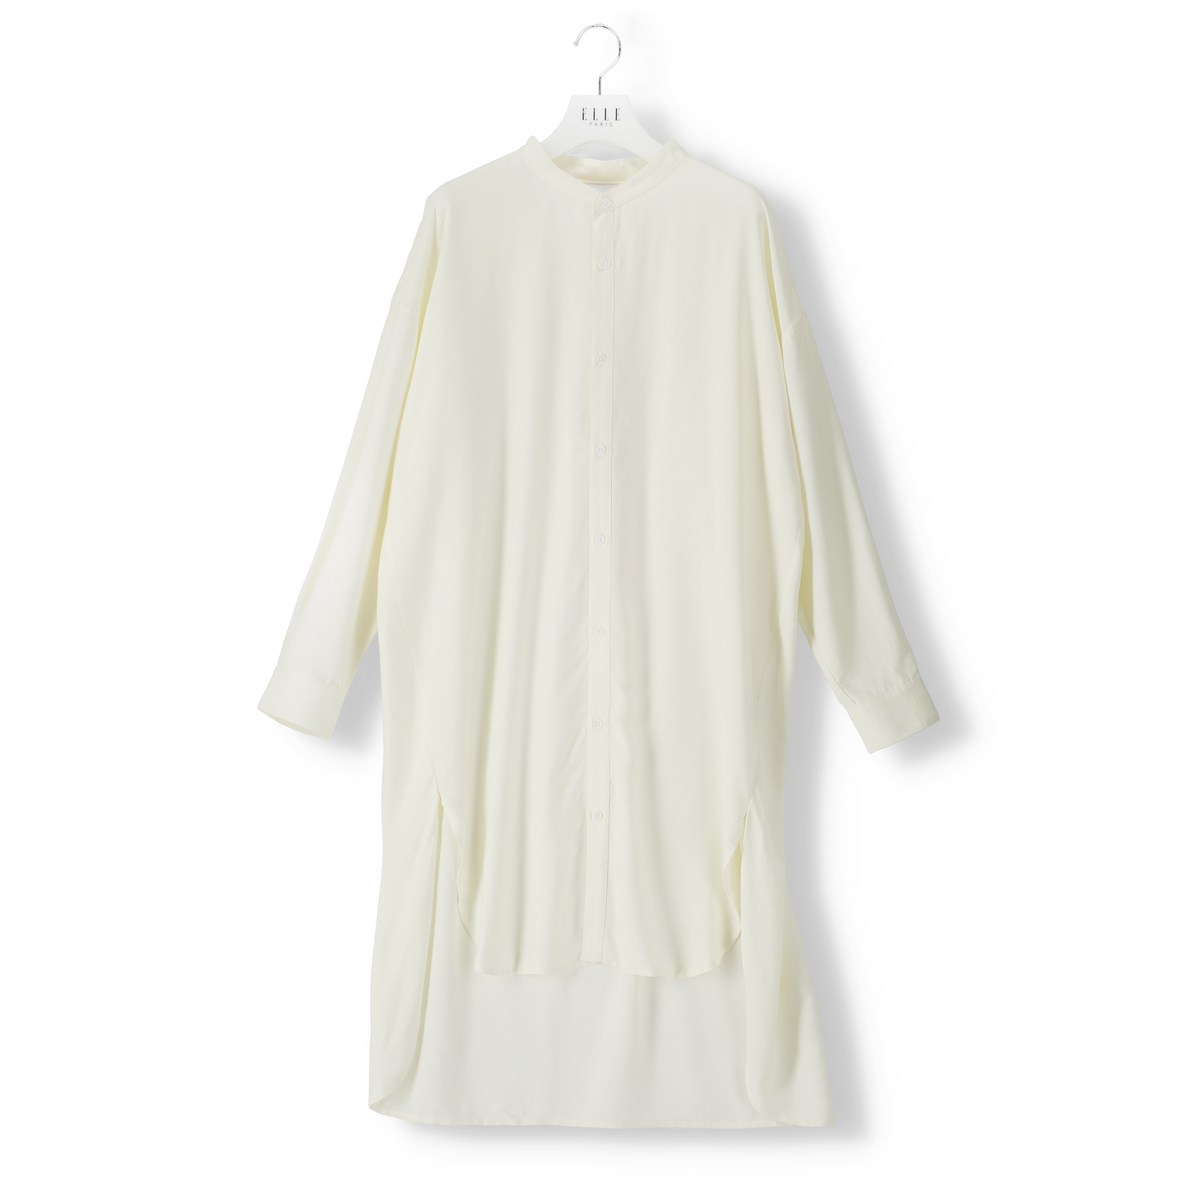  ELLE PARIS ビッグシルエットバンドカラーシャツドレス  S  ホワイト